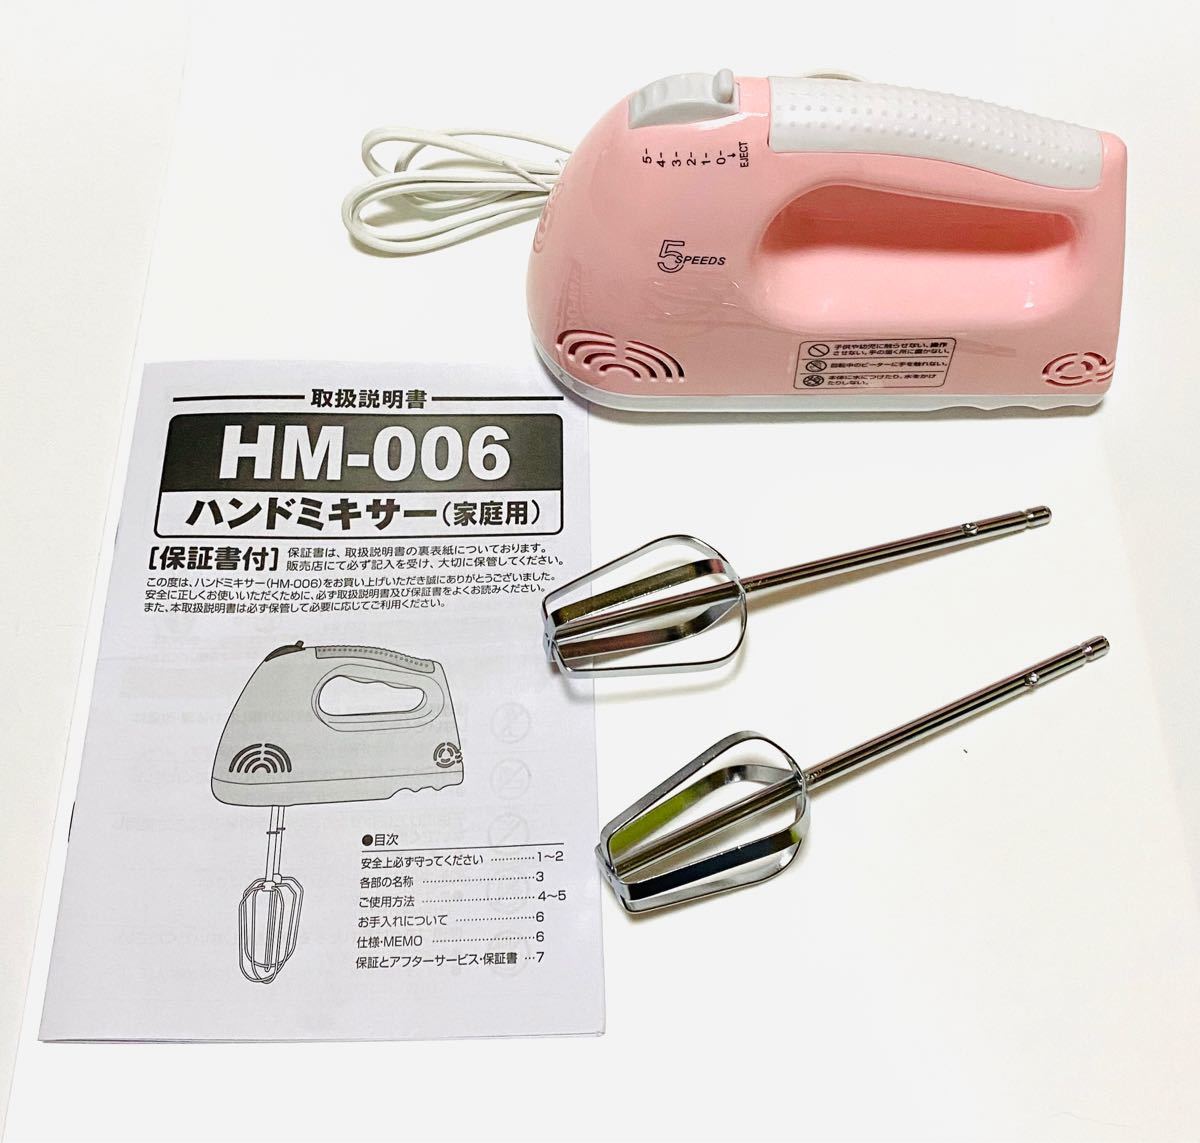 株式会社ヒロ・コーポレーション(HIRO Corp.)ハンドミキサー フェミニンピンク　HM-006 PK 新品